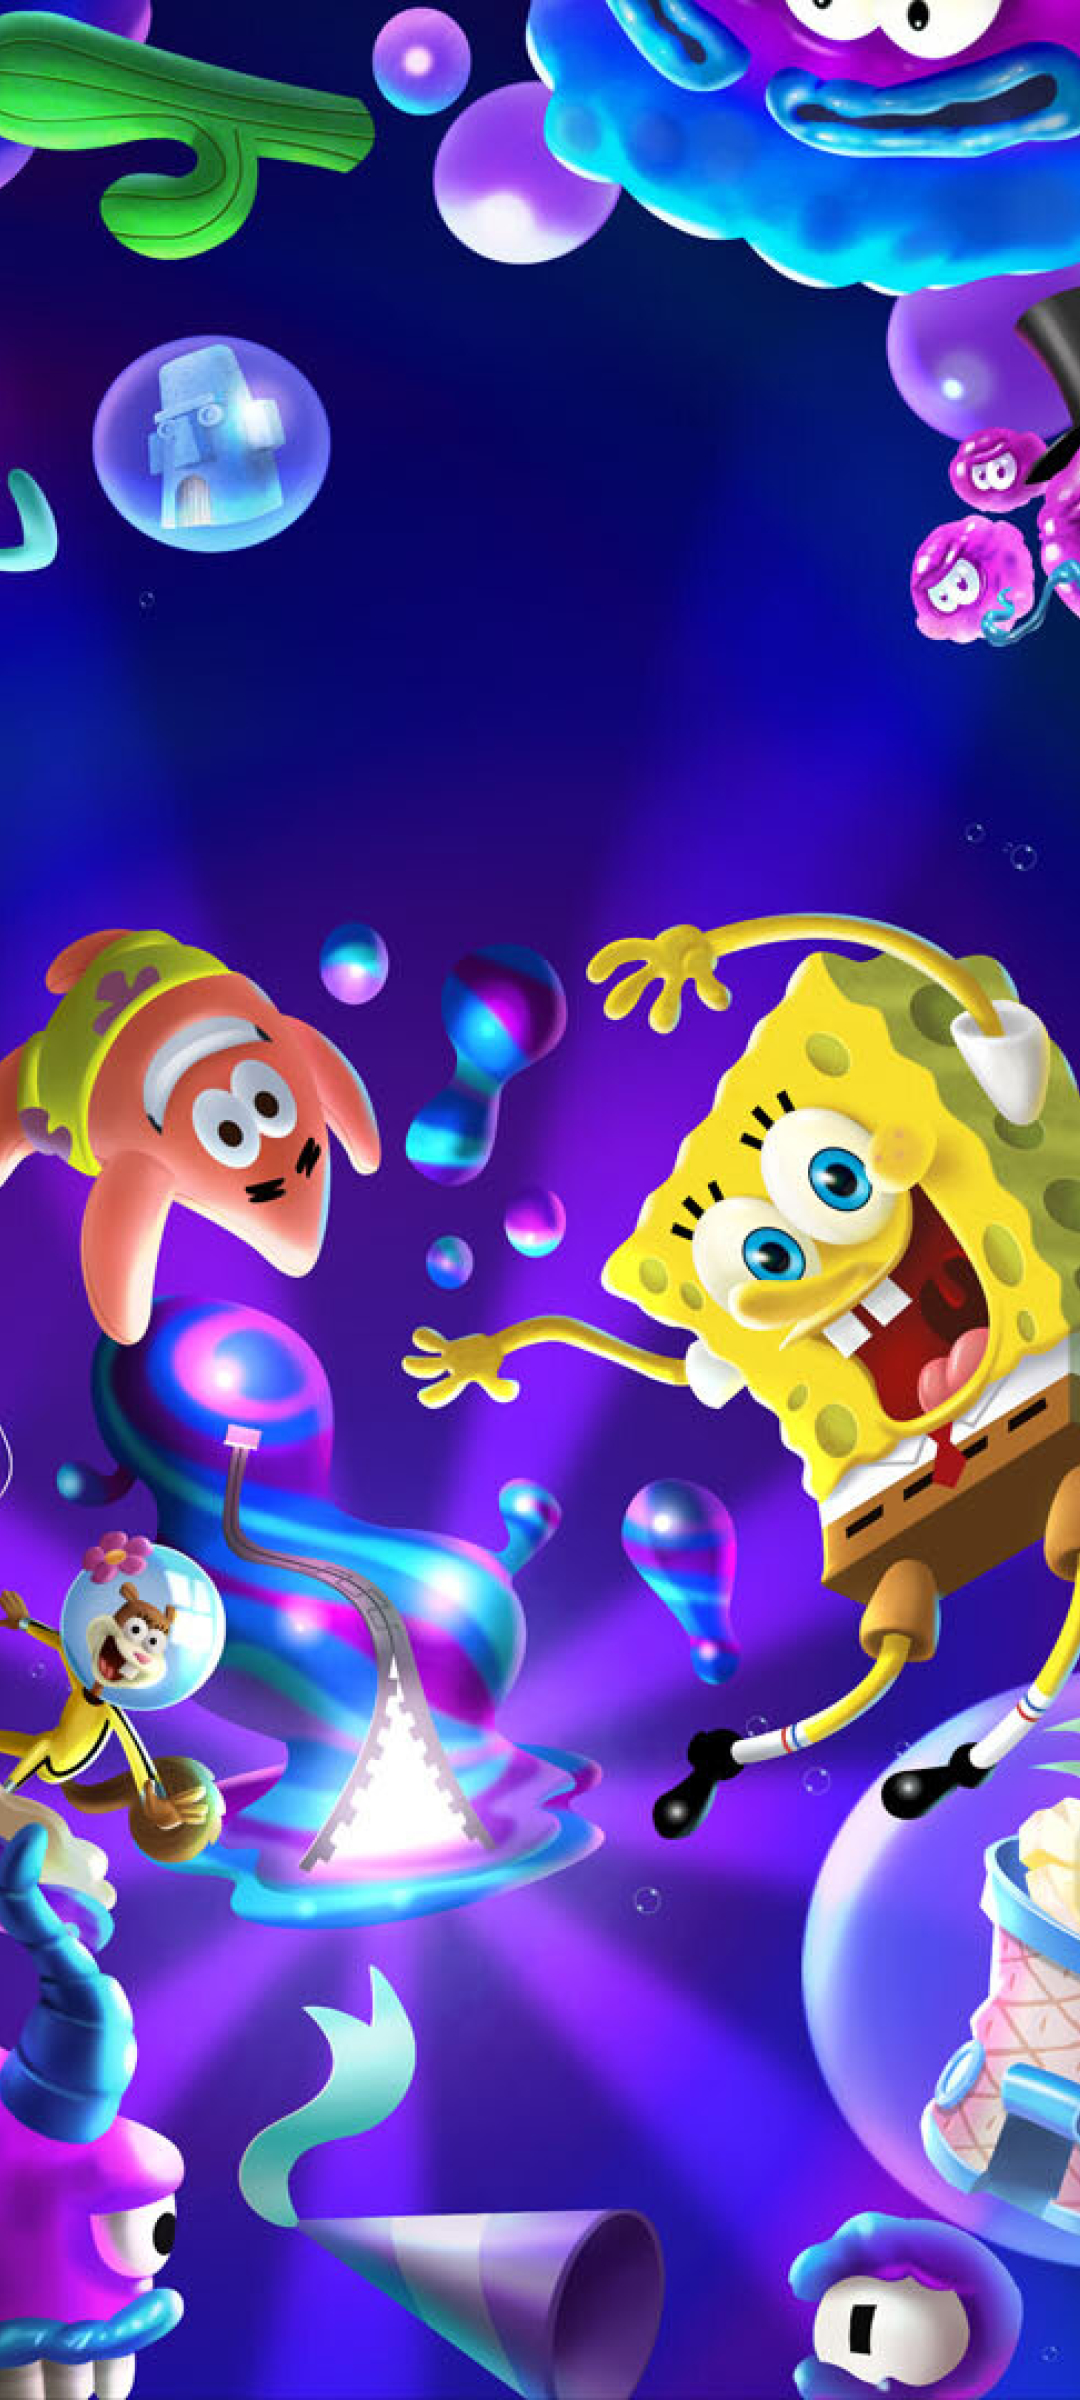 Spongebob HD Wallpapers and 4K Backgrounds  Wallpapers Den